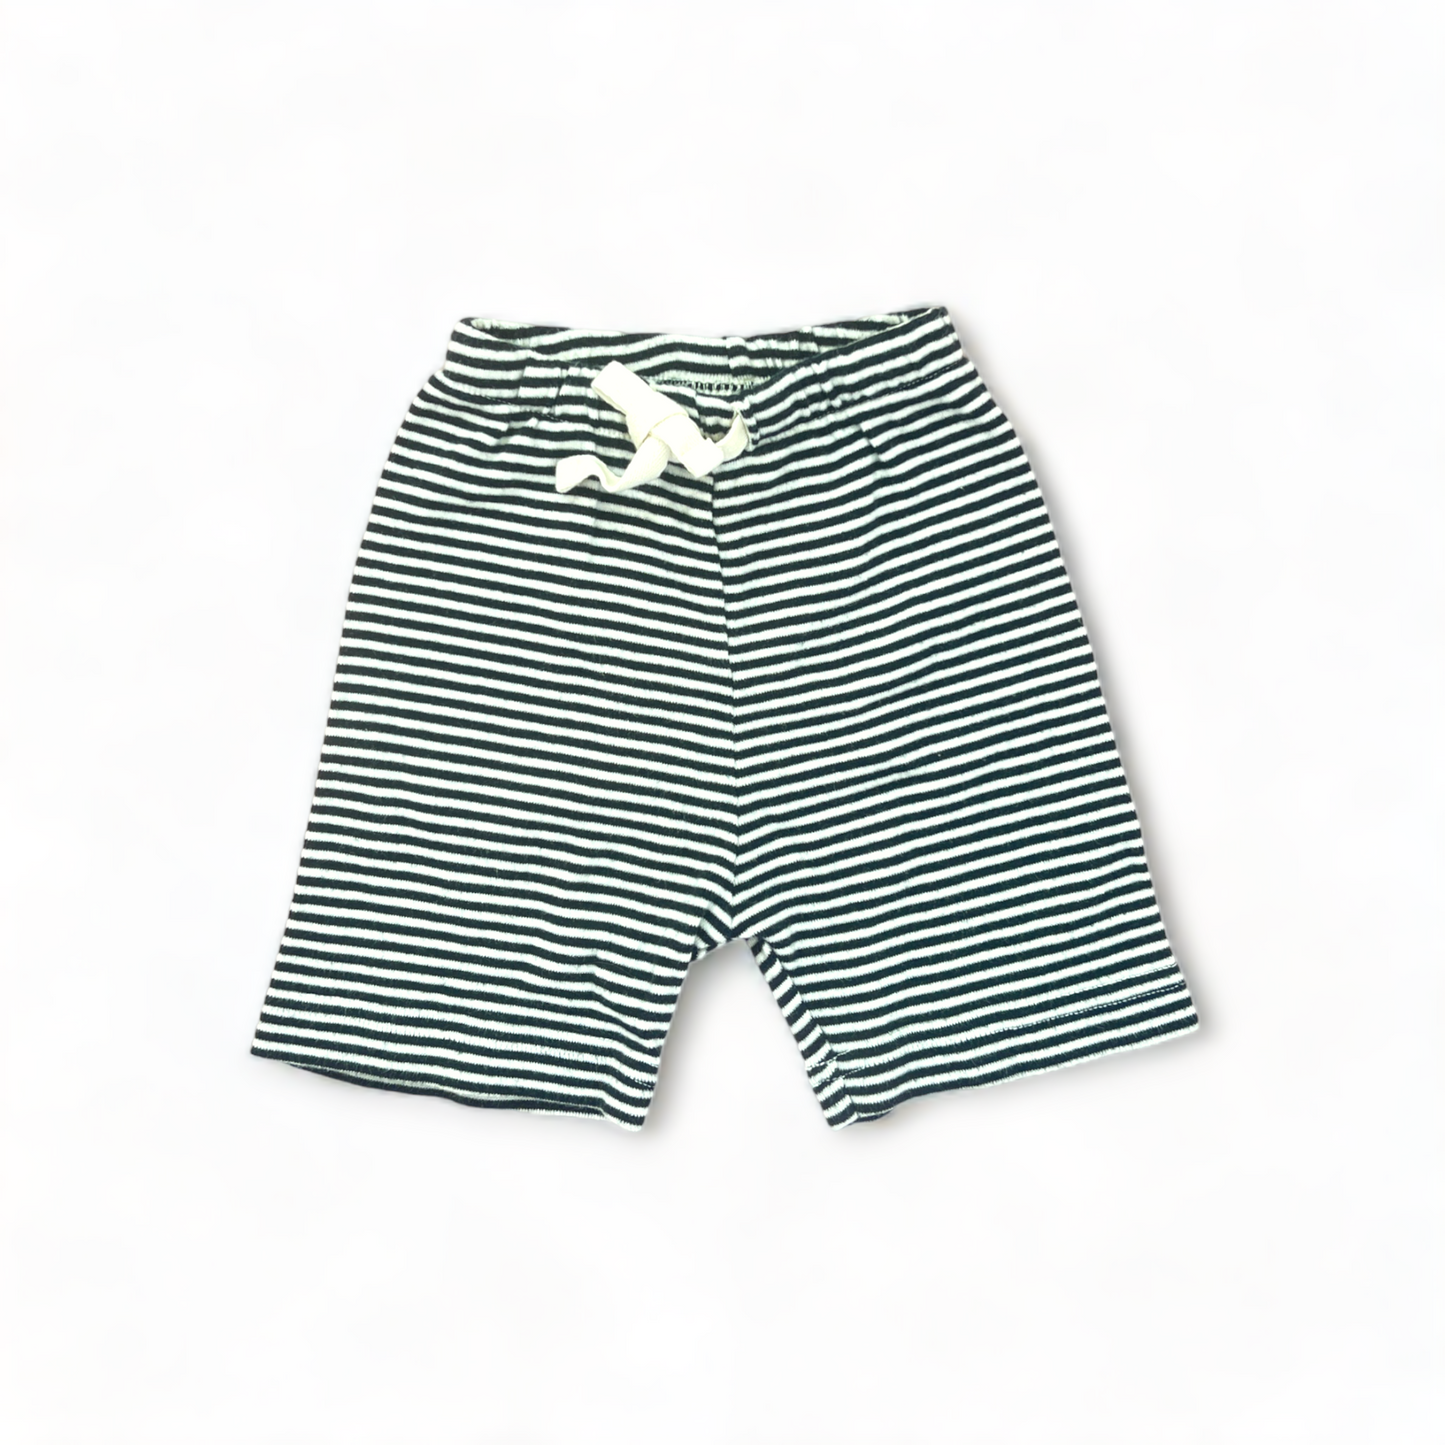 Nature Baby shorts | Size: 2 | EUC